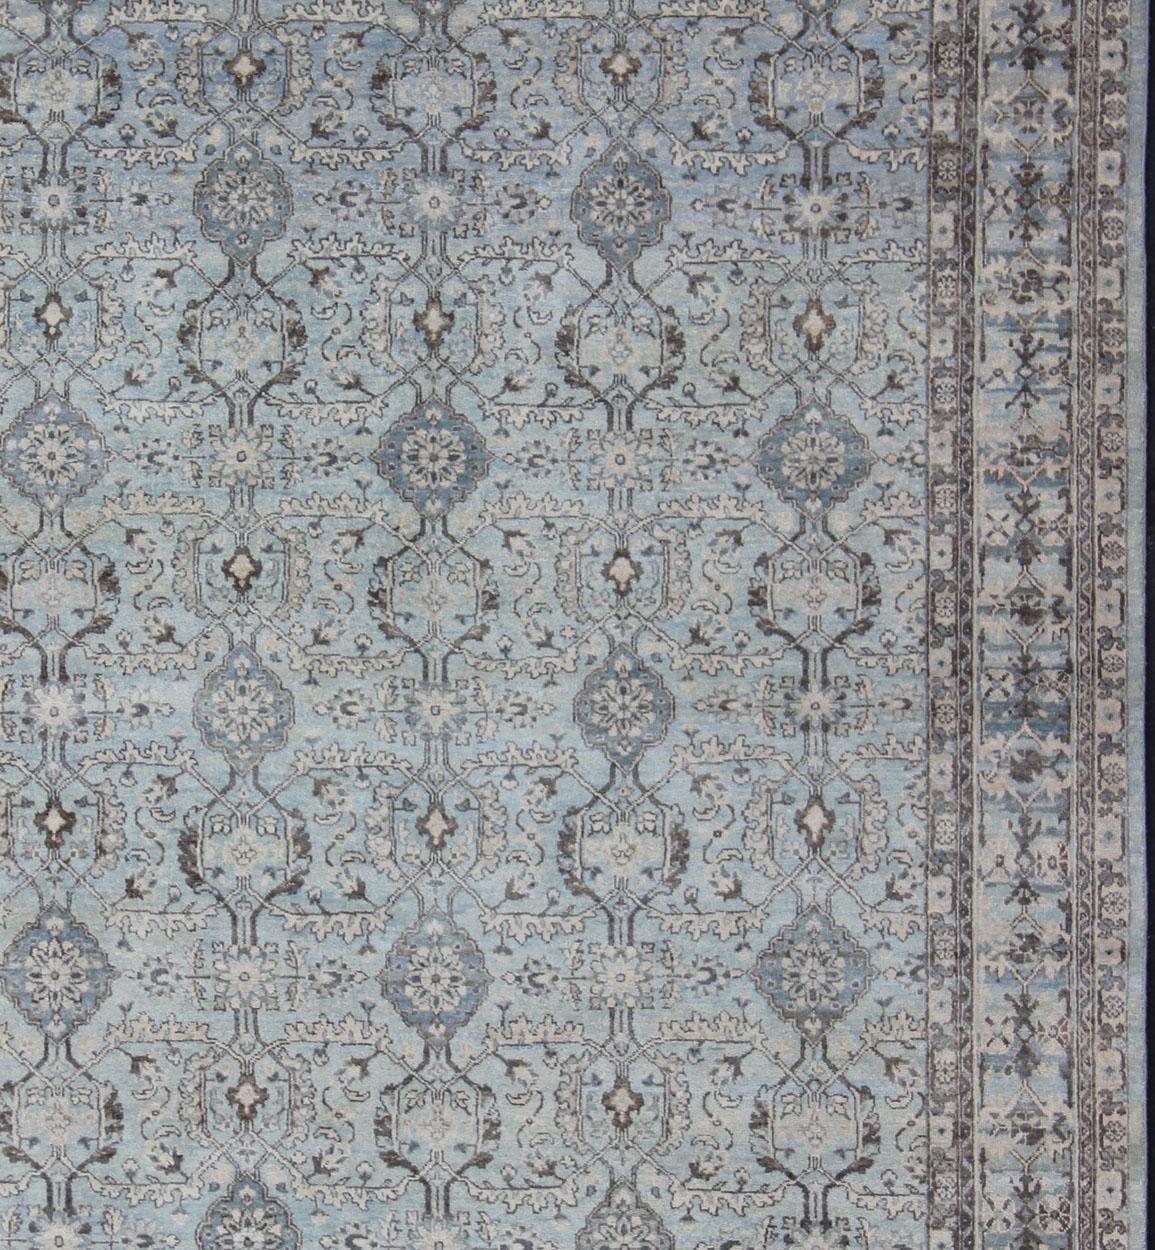 Mesures : 8 x 10 
Ce merveilleux Oushak présente un motif sur toute la surface, flanqué d'un motif répétitif dans la bordure. La totalité de la pièce est rendue dans des tons gris, bleus et bruns, ce qui en fait un tapis polyvalent, bien adapté à